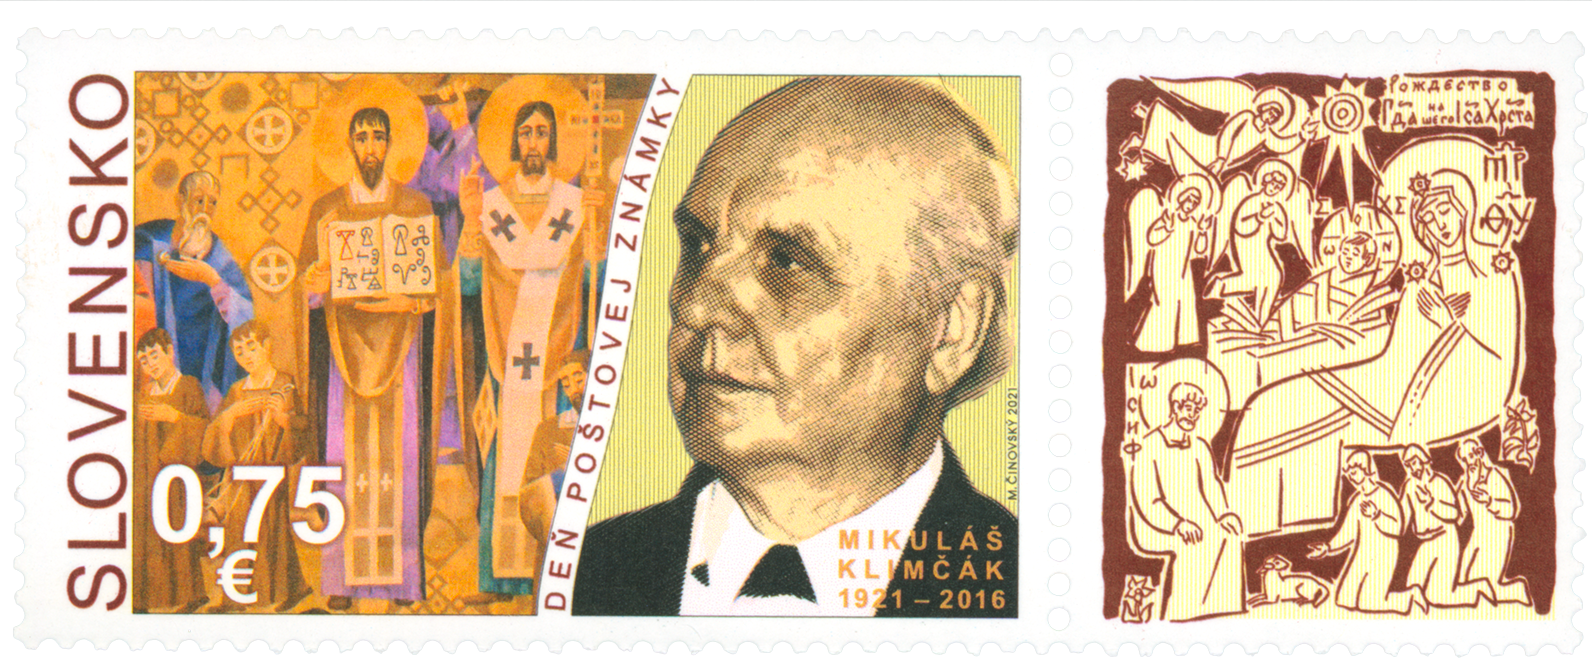 756 - Postage Stamp Day: Mikuláš Klimčák (1921 – 2016)